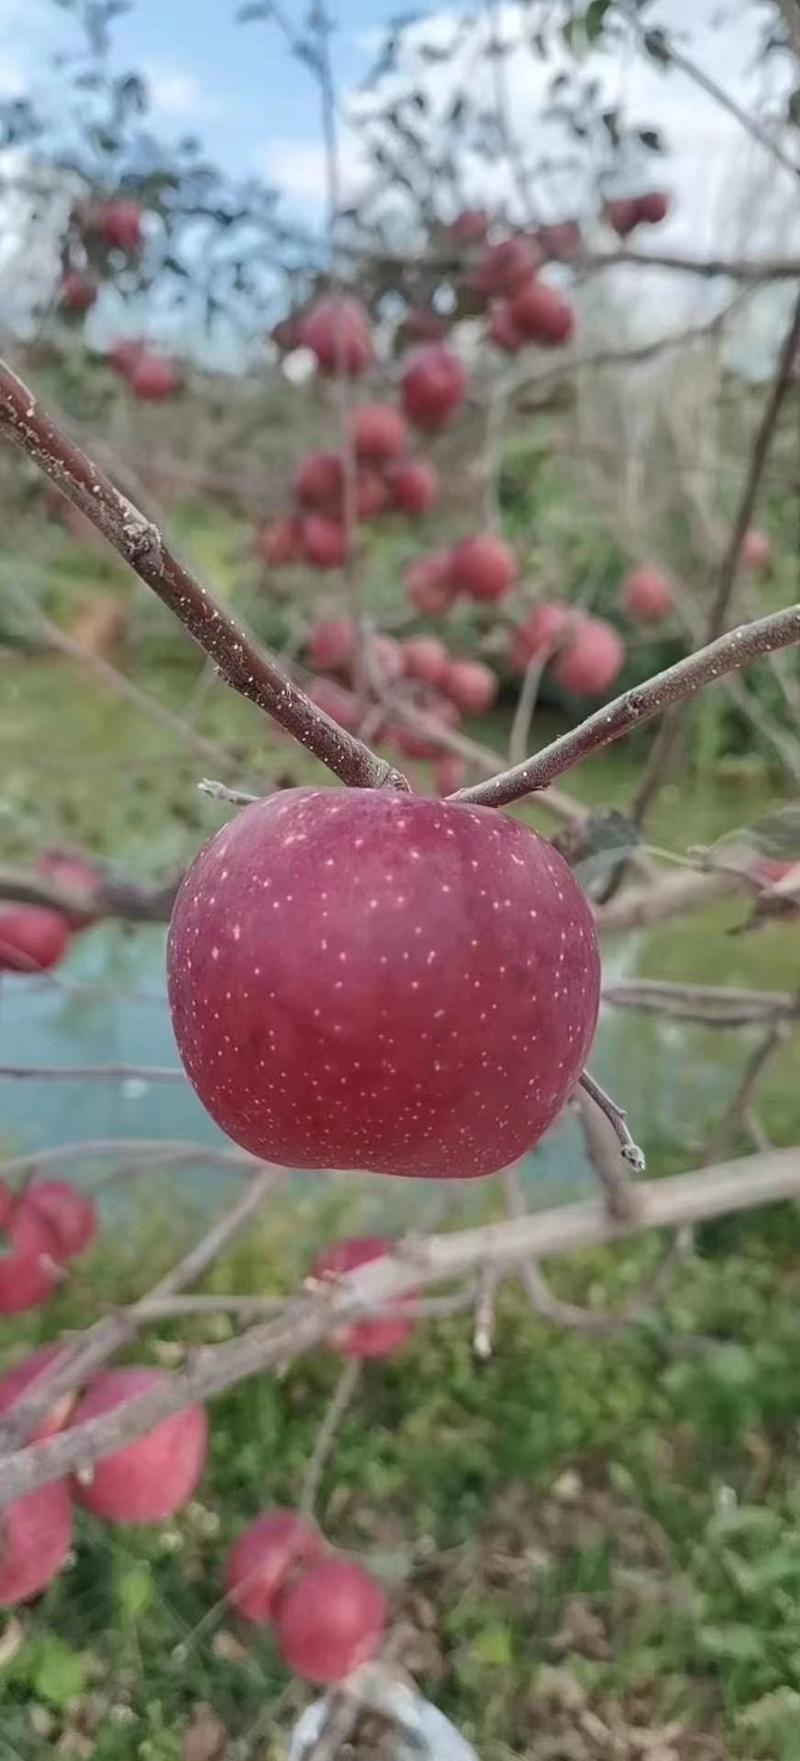 红富士糖心苹果。。。。。